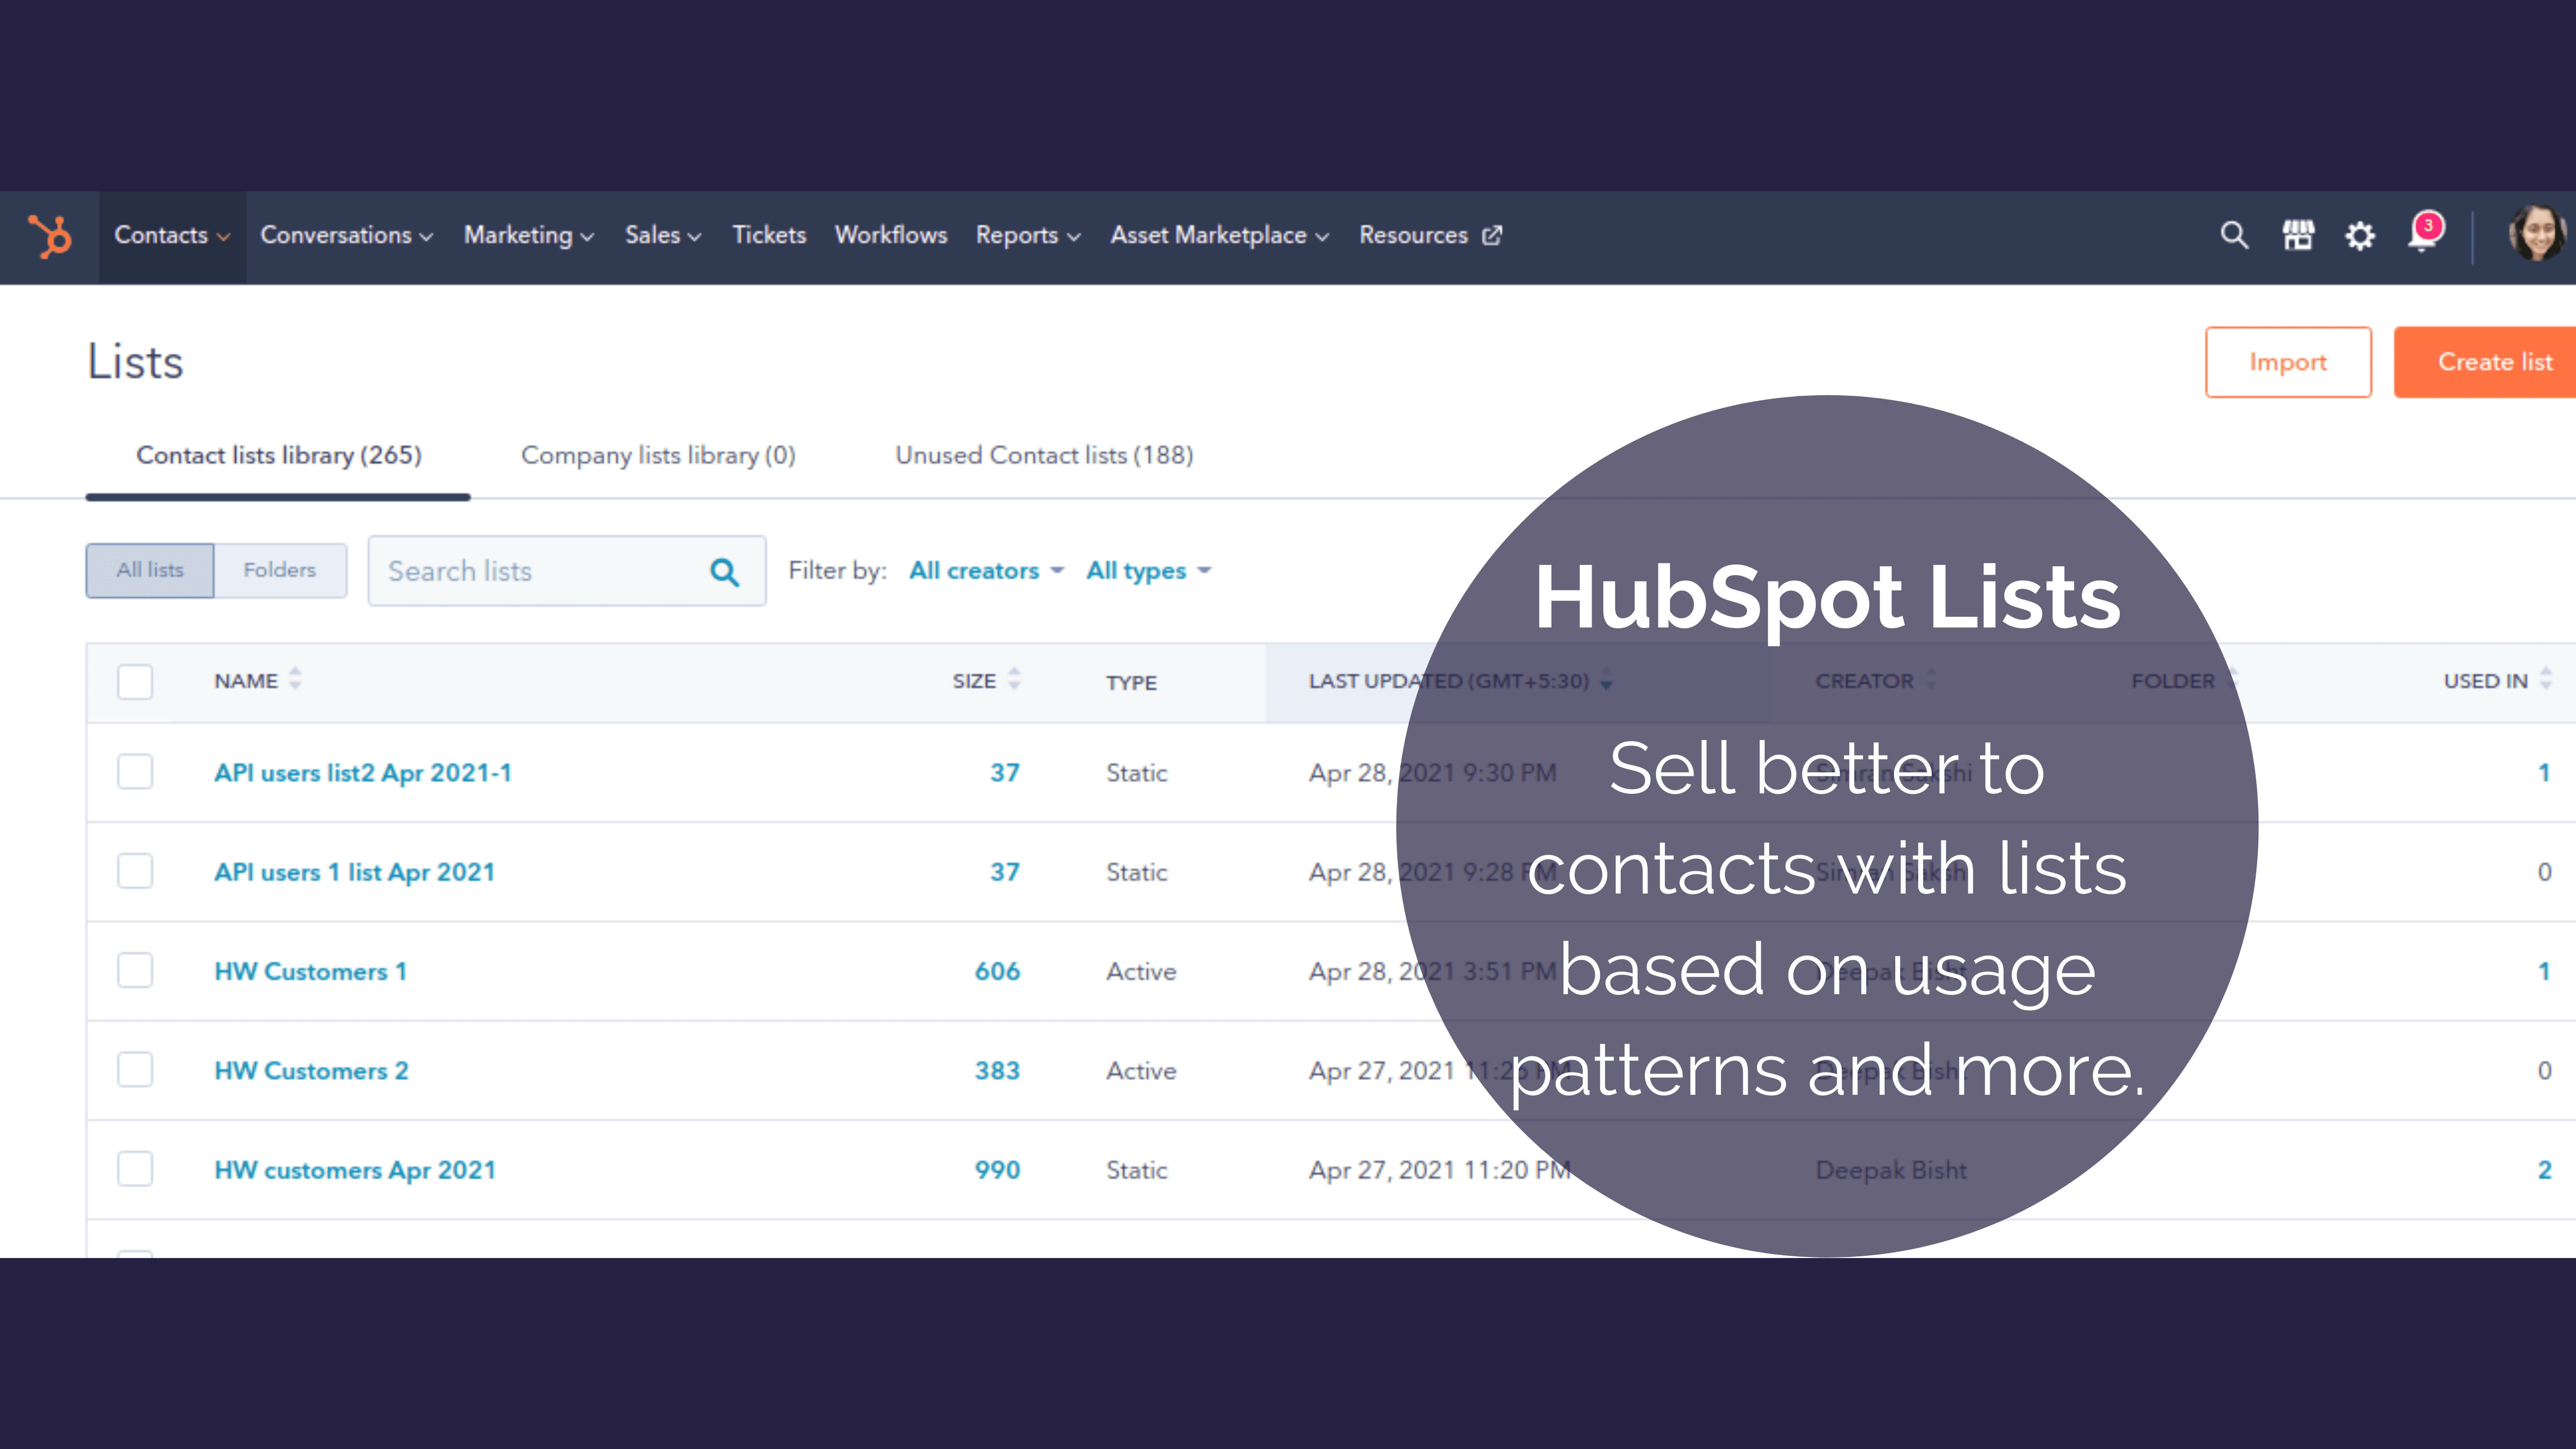 https://f.hubspotusercontent20.net/hubfs/2720327/HubSpot%20Lists%201.png